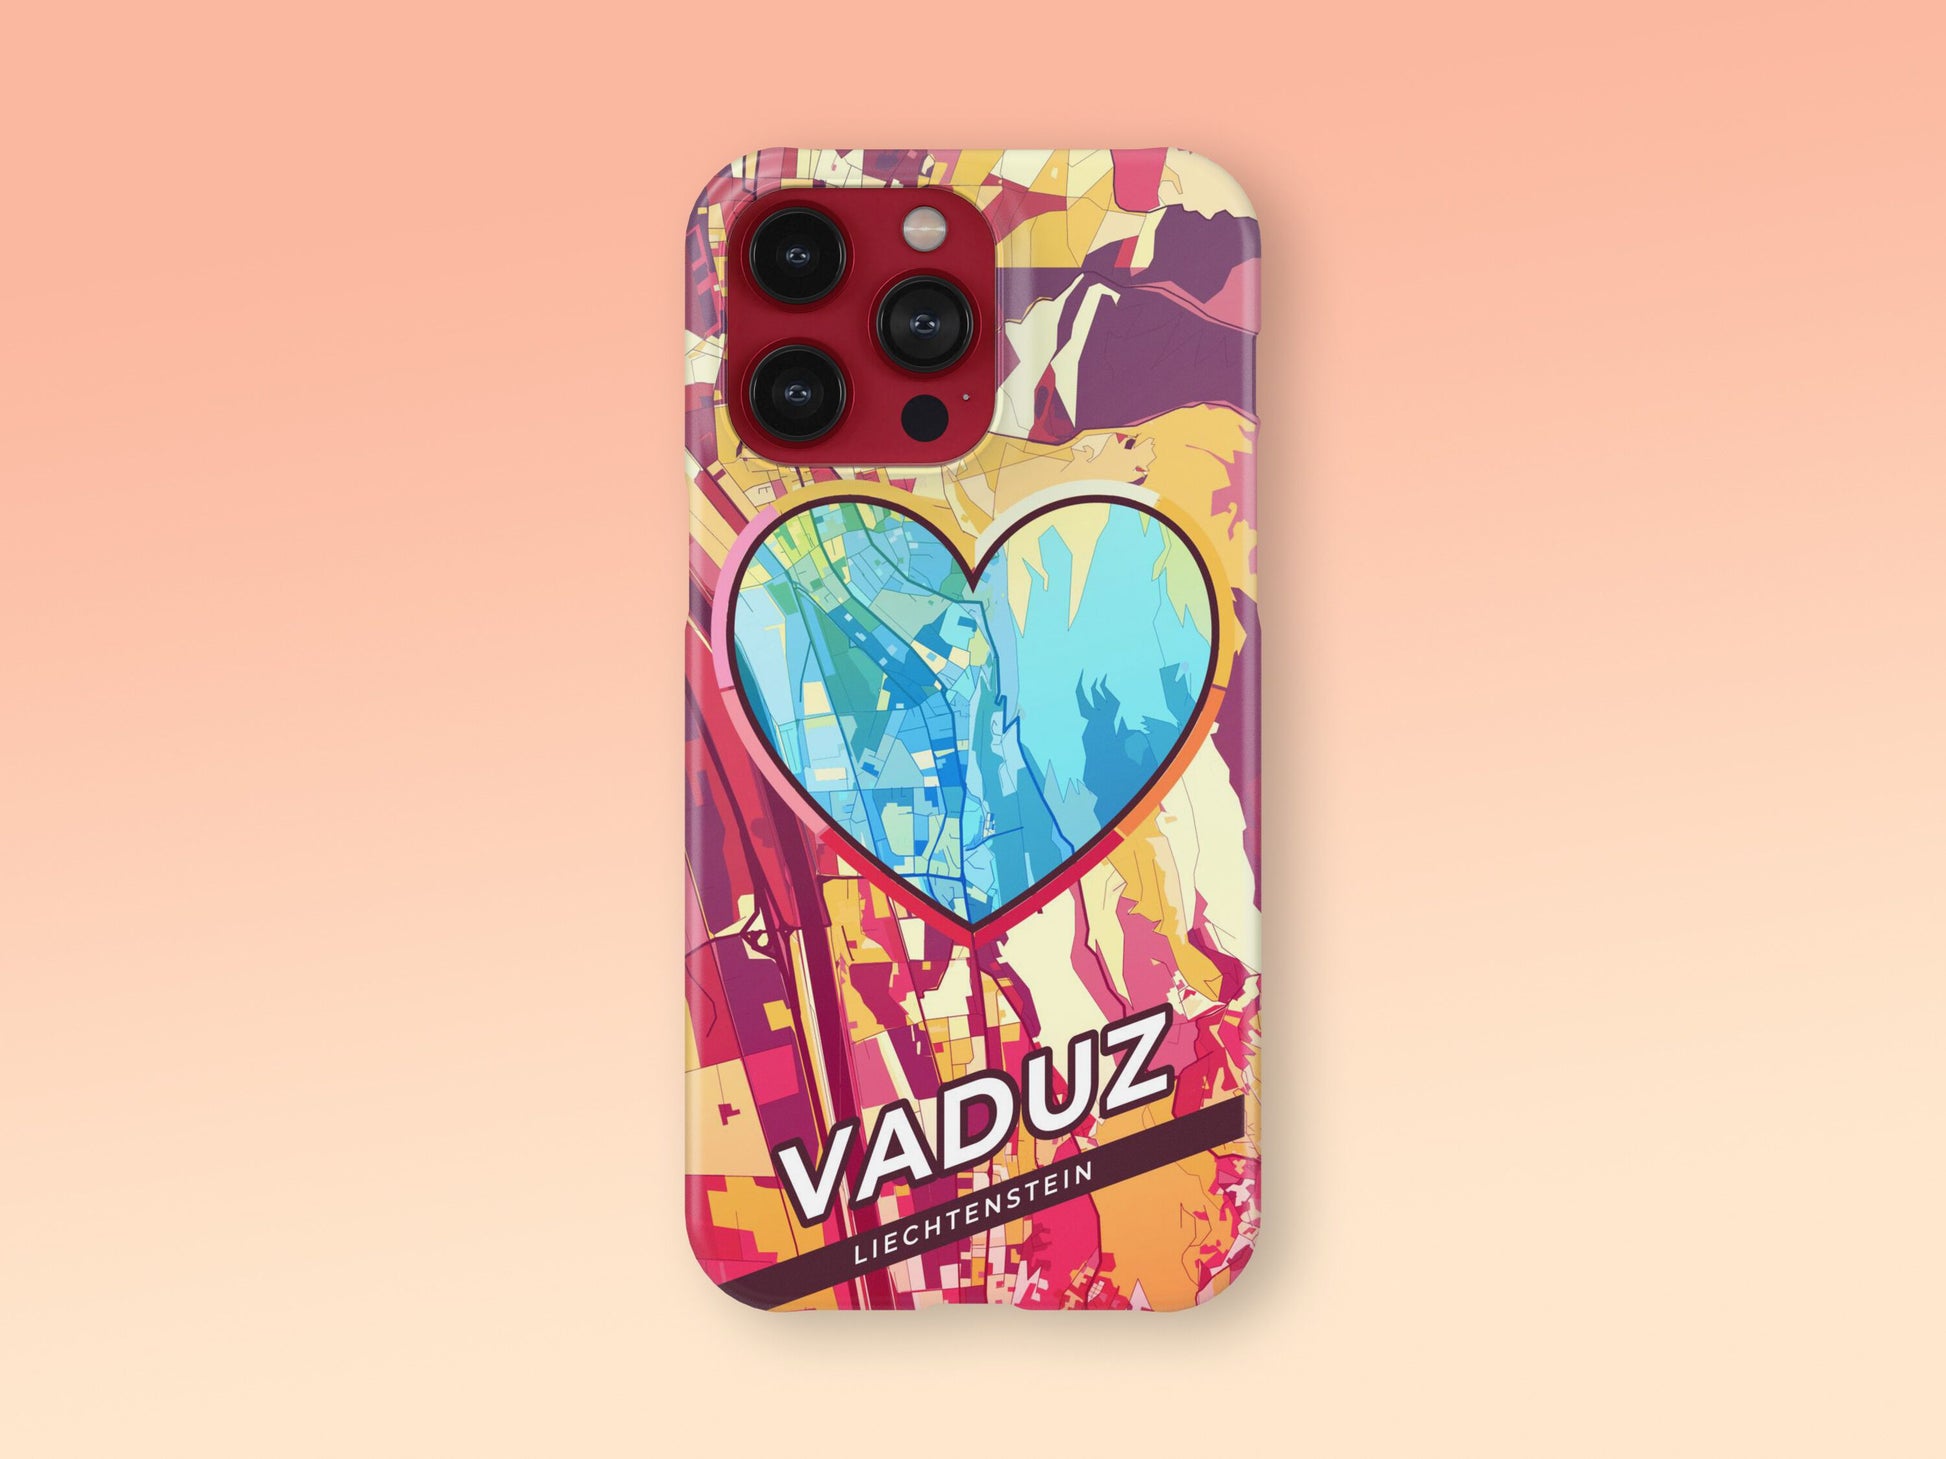 Vaduz Liechtenstein slim phone case with colorful icon 2